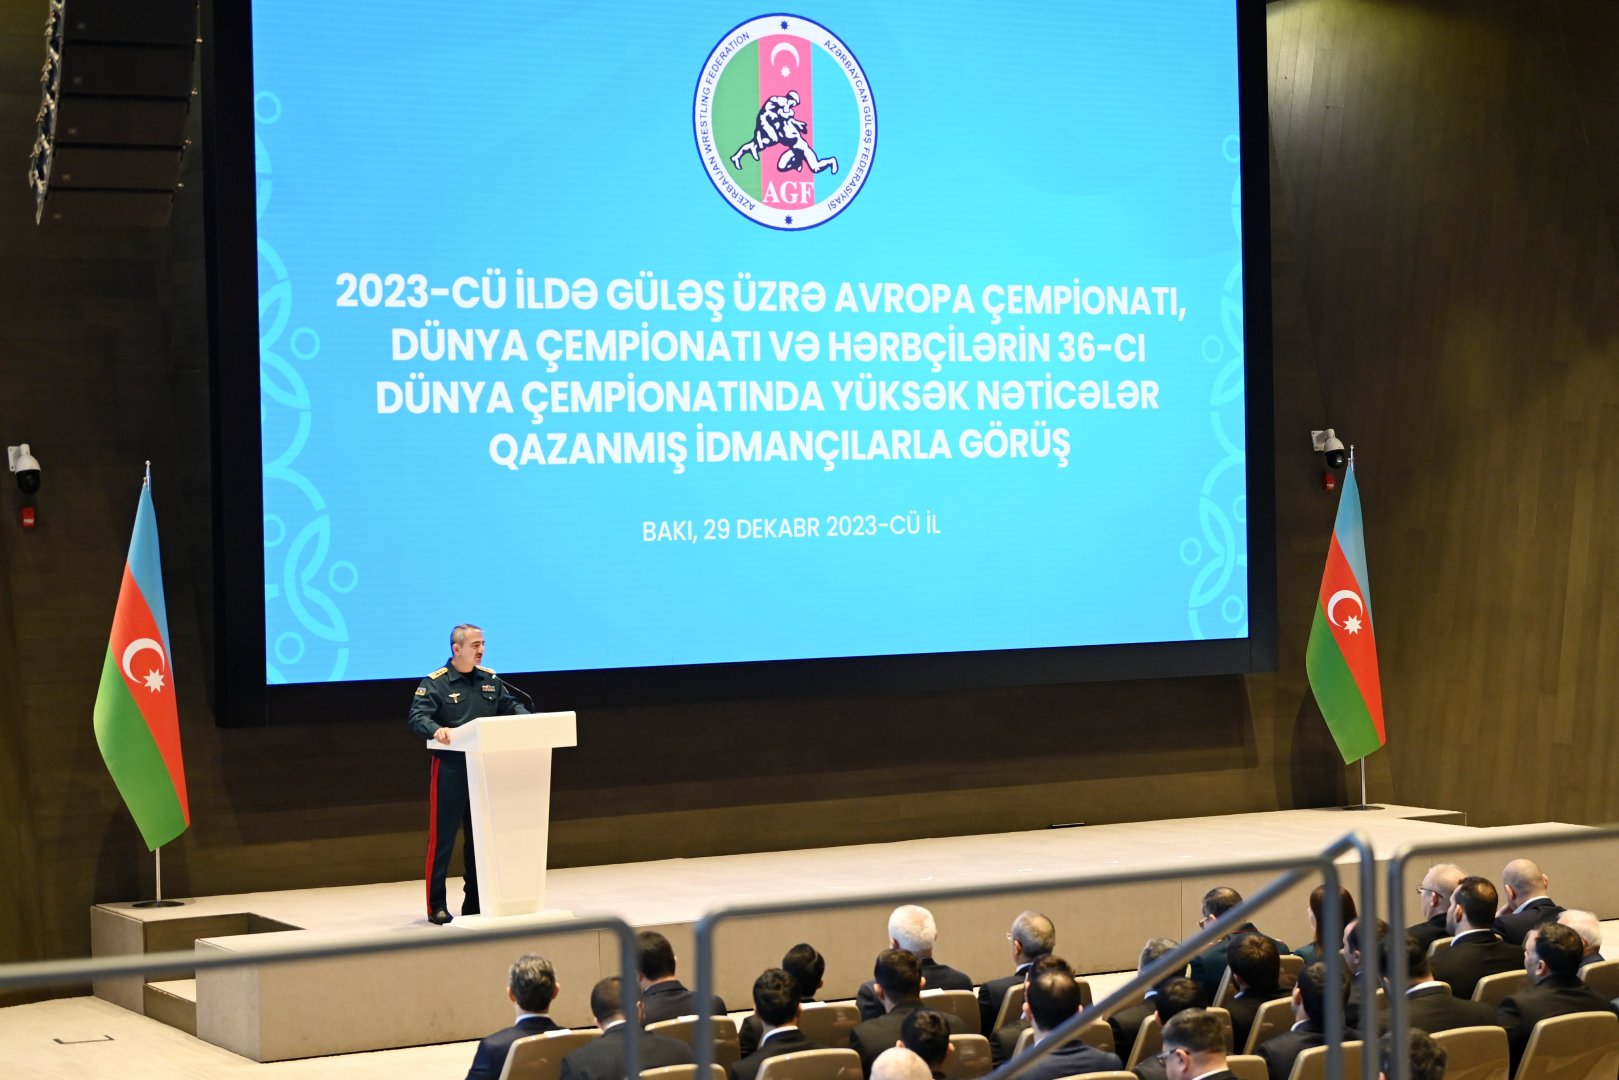 2023 год стал знаменательным и насыщенным победами для Федерации борьбы Азербайджана - Микаил Джаббаров (ФОТО)